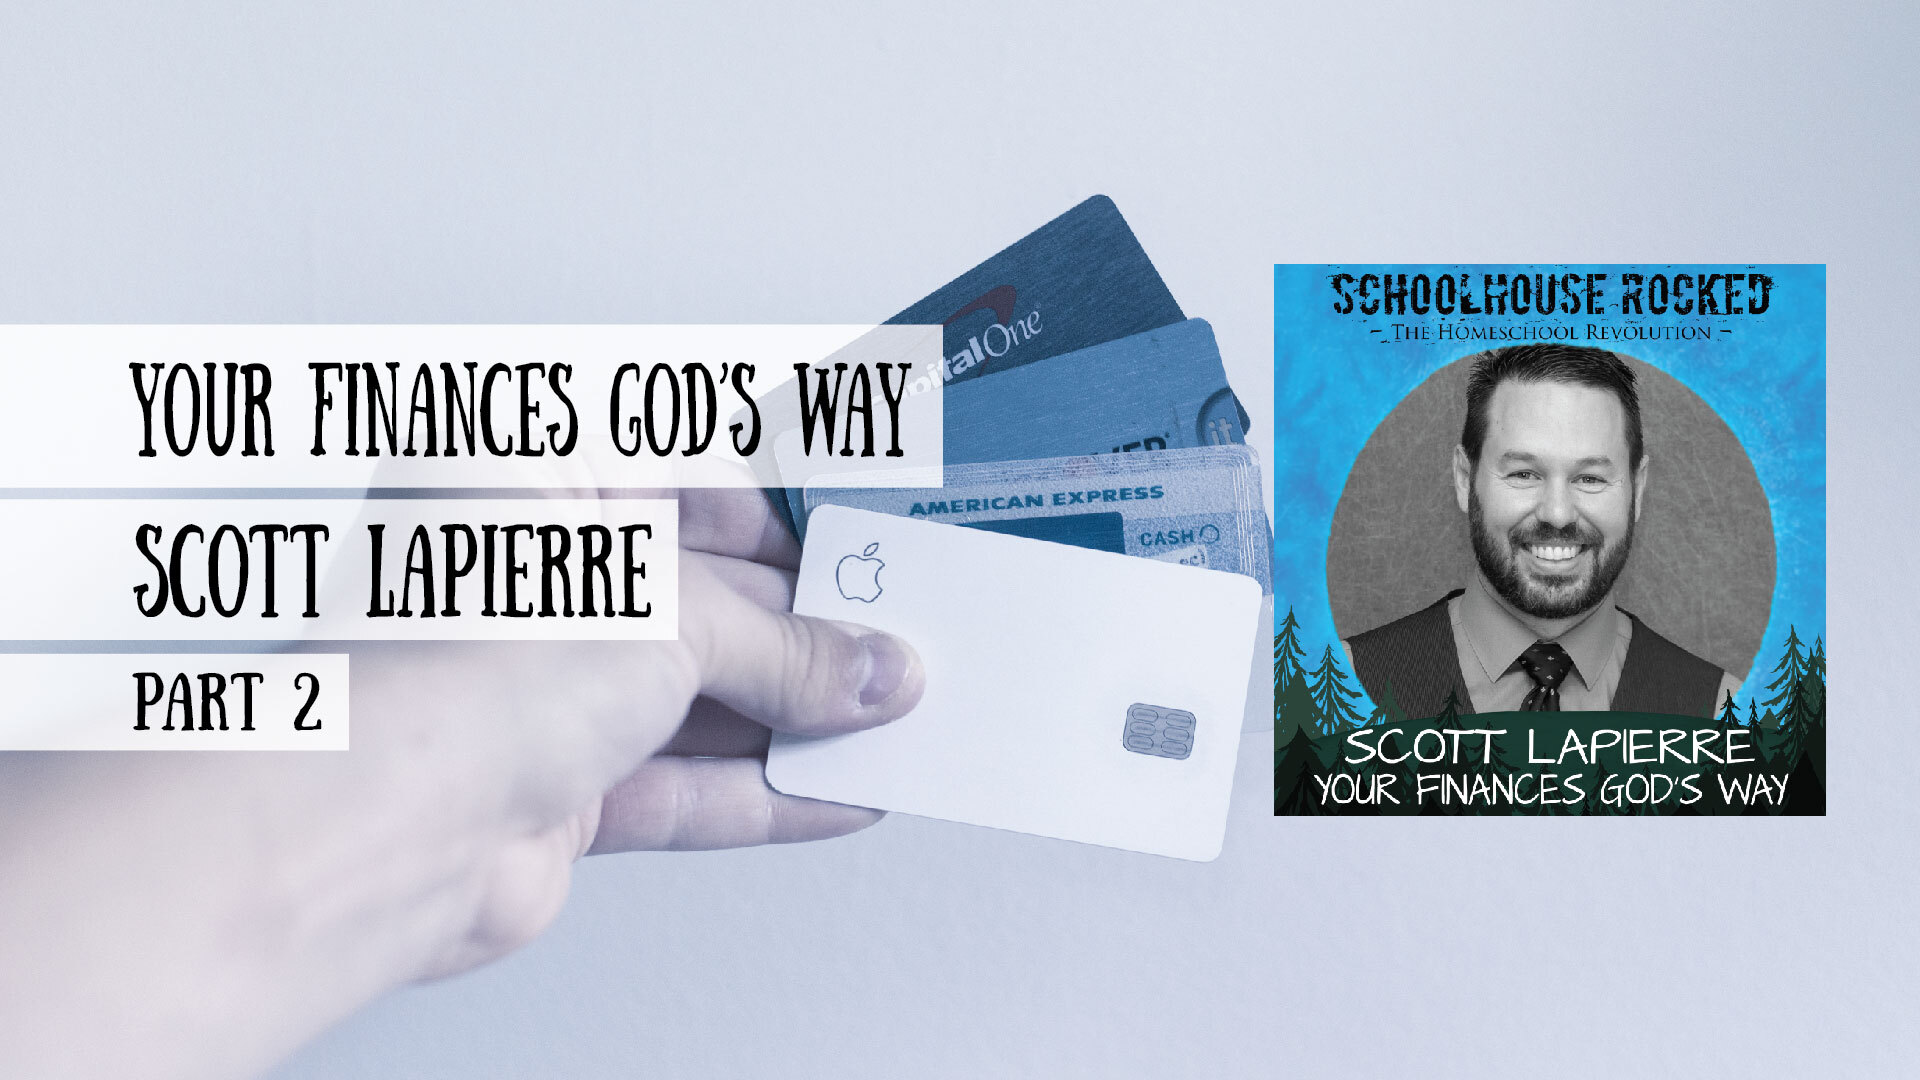 Scott LaPierre - Your Finances God's Way